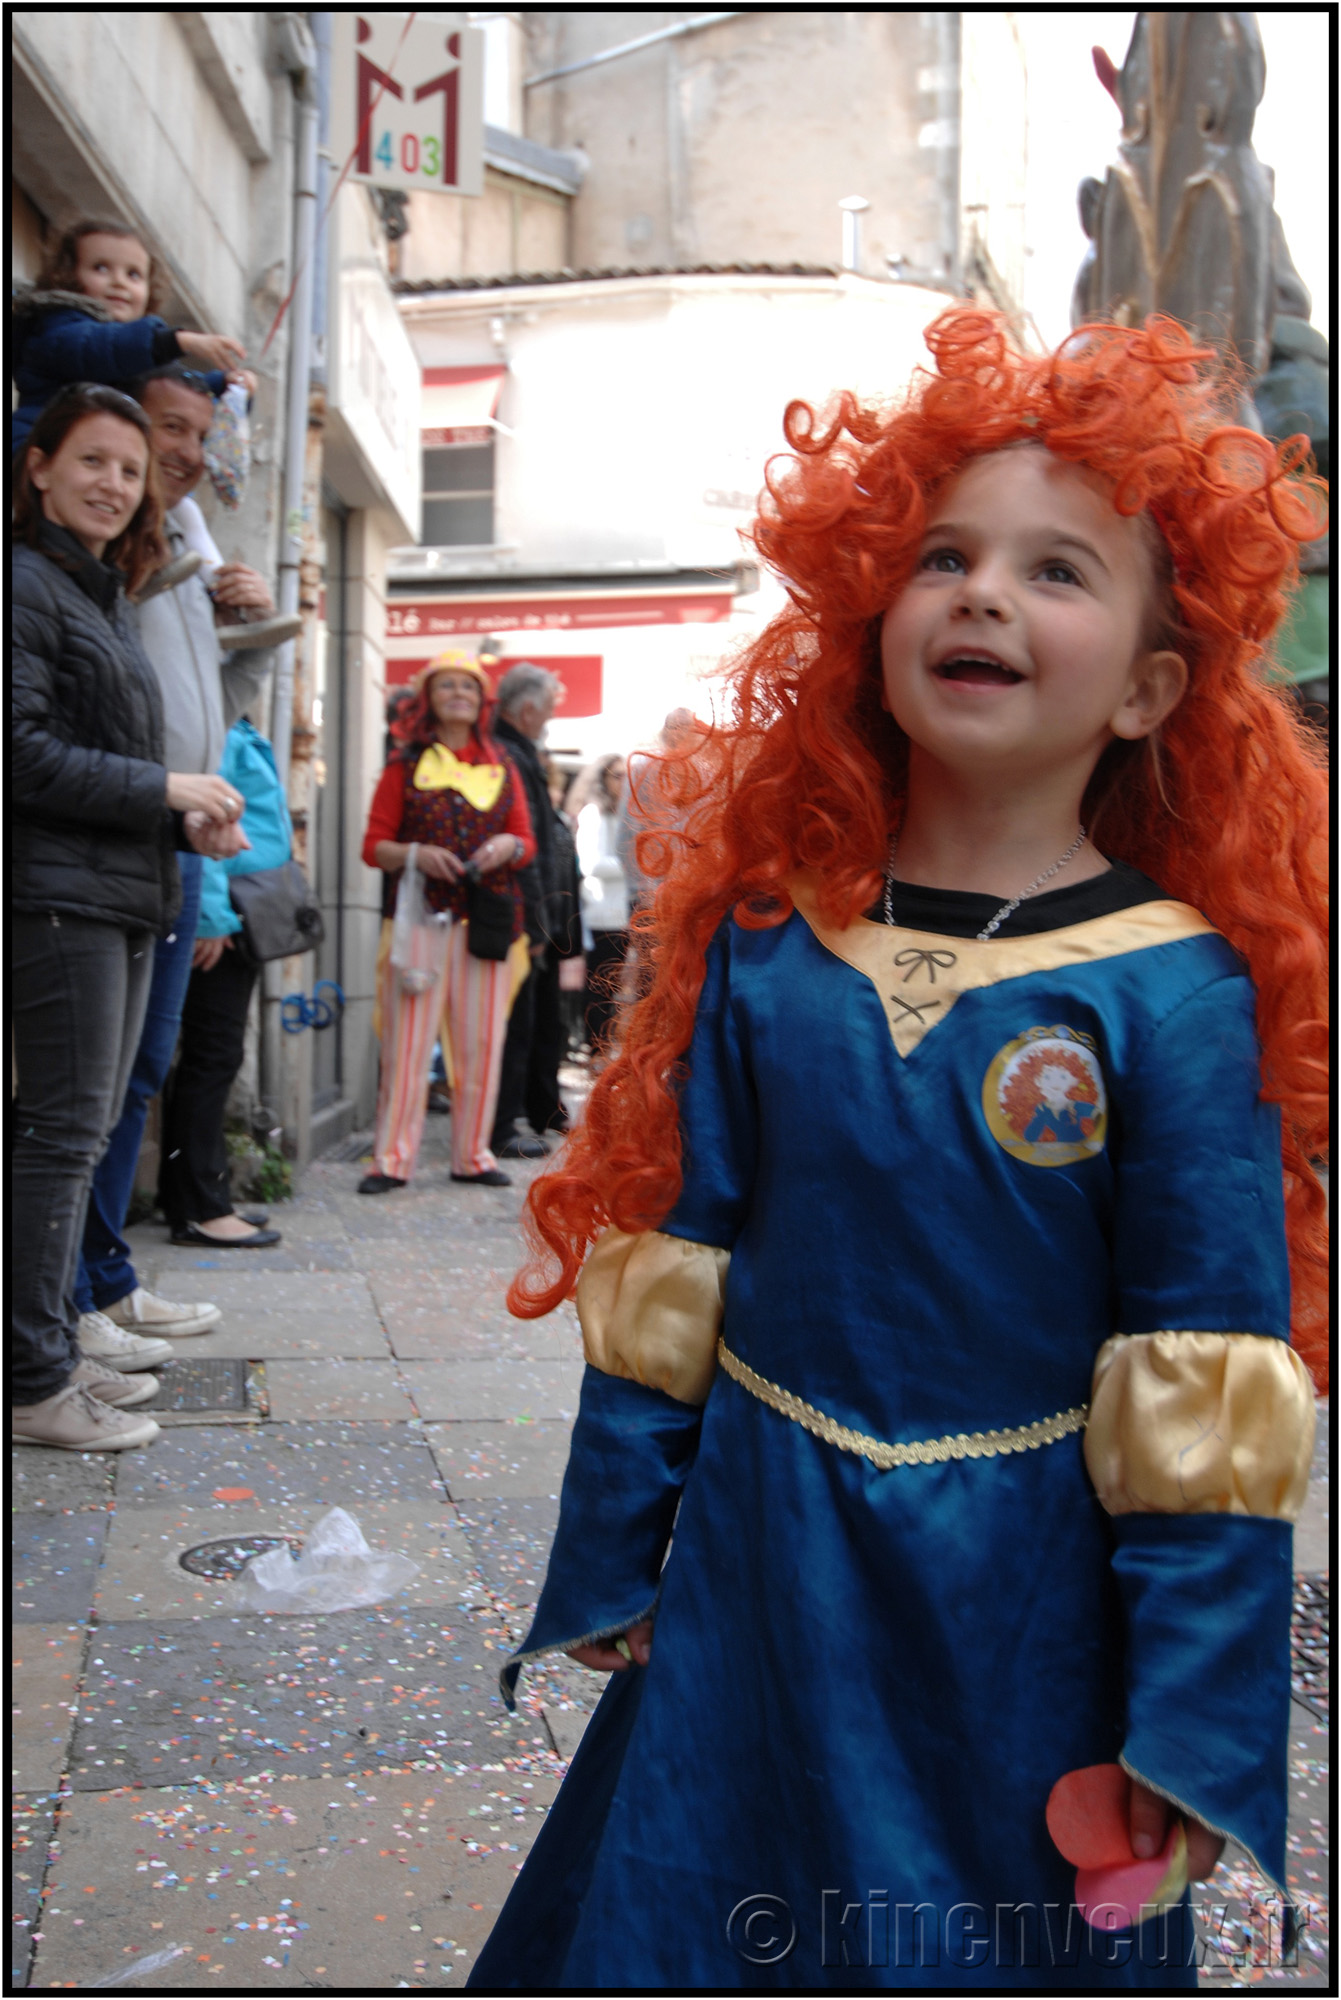 kinenveux_45_carnaval2015lr.jpg - Carnaval des Enfants 2015 - La Rochelle